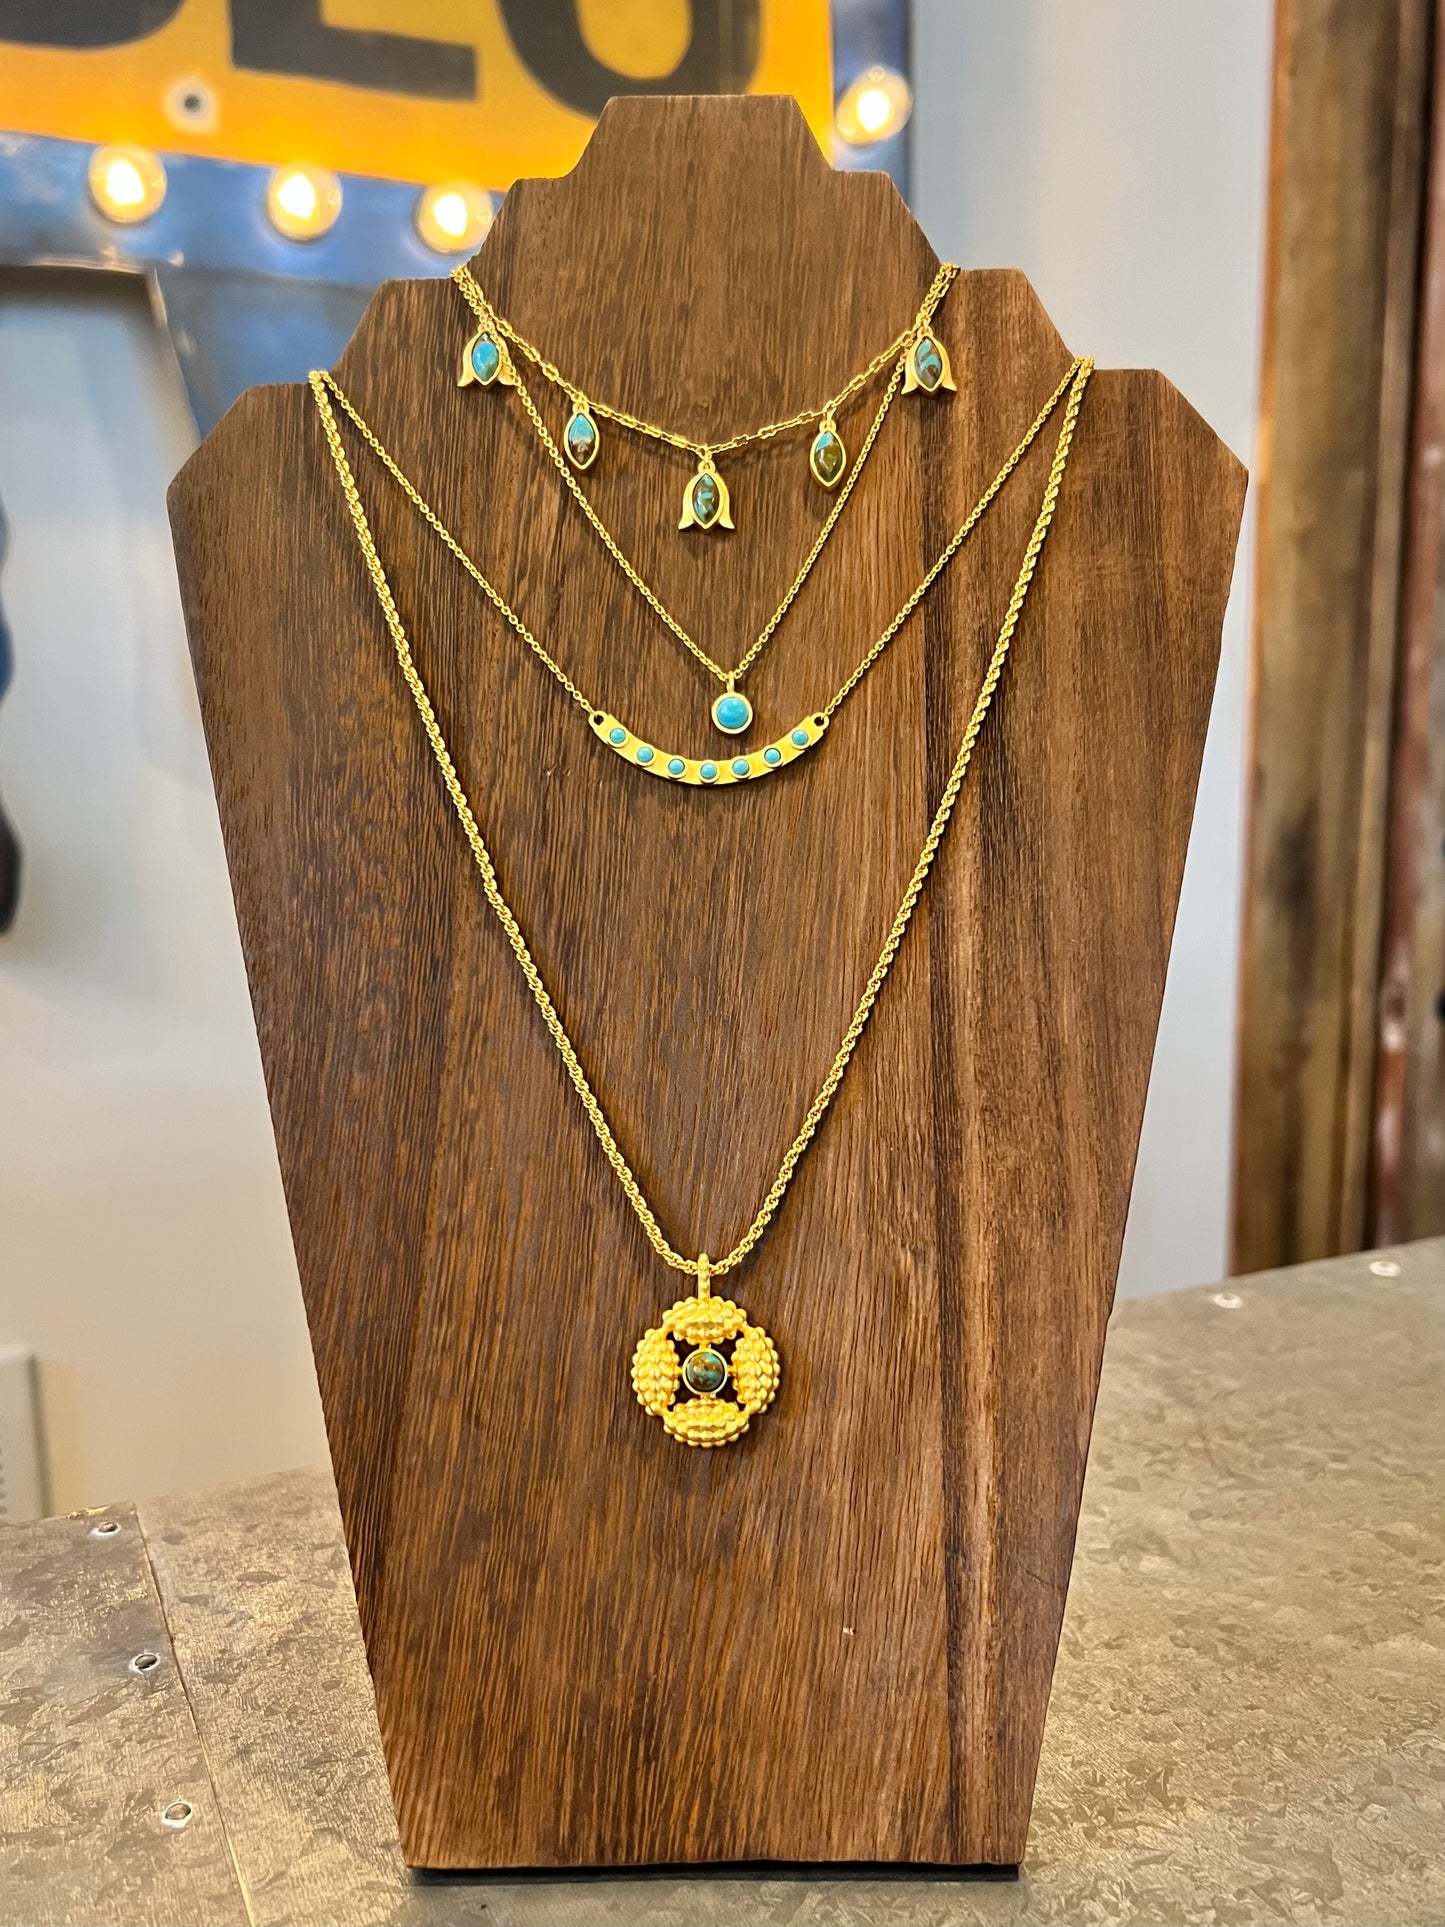 Christina Greene Dainty Turquoise Pendant Necklace